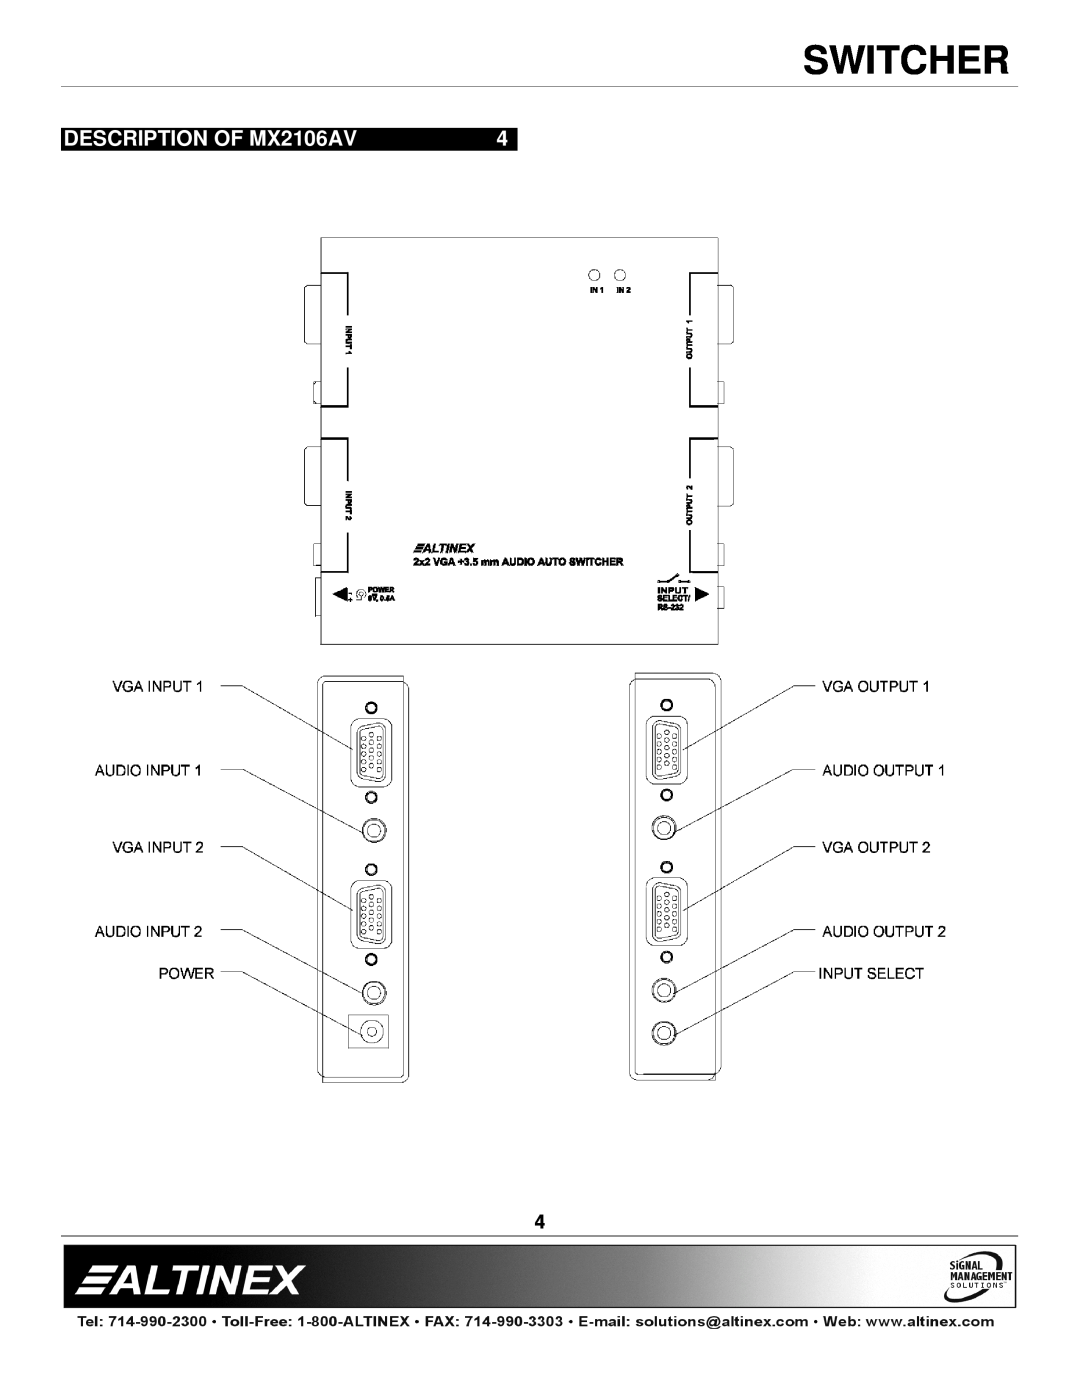 Altinex manual DESCRIPTION OF MX2106AV, Switcher 